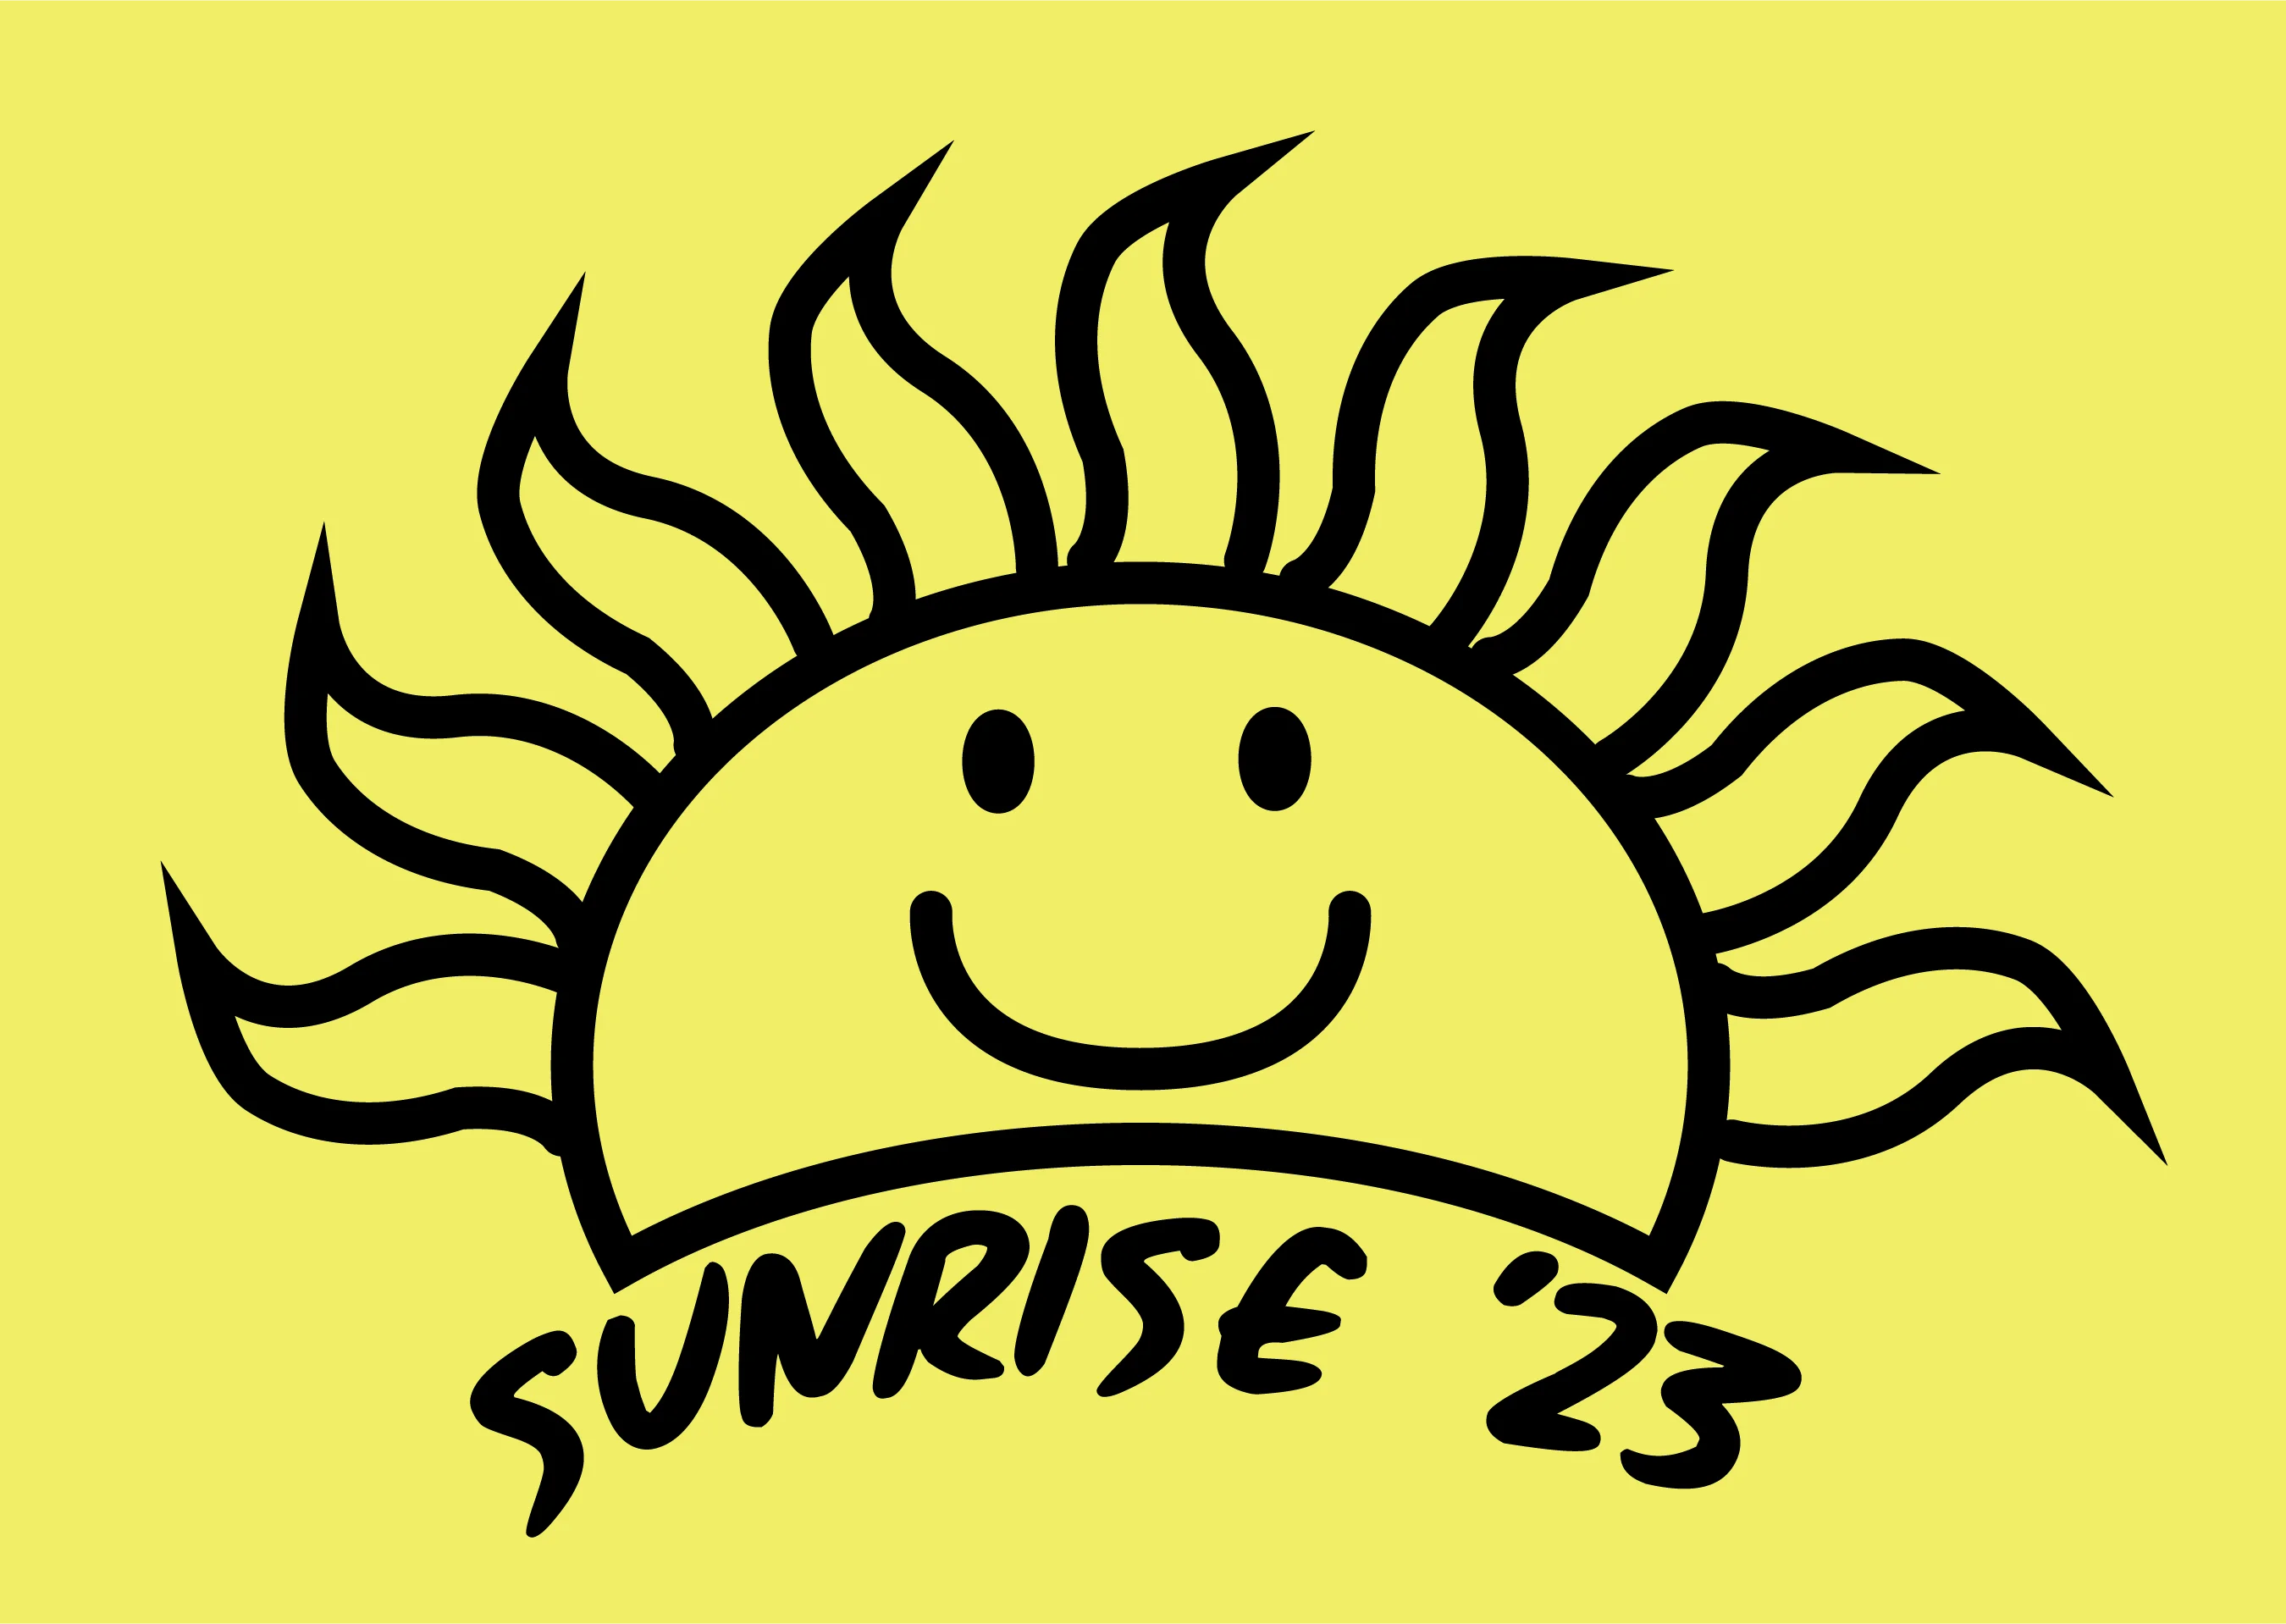 Sunrise 23